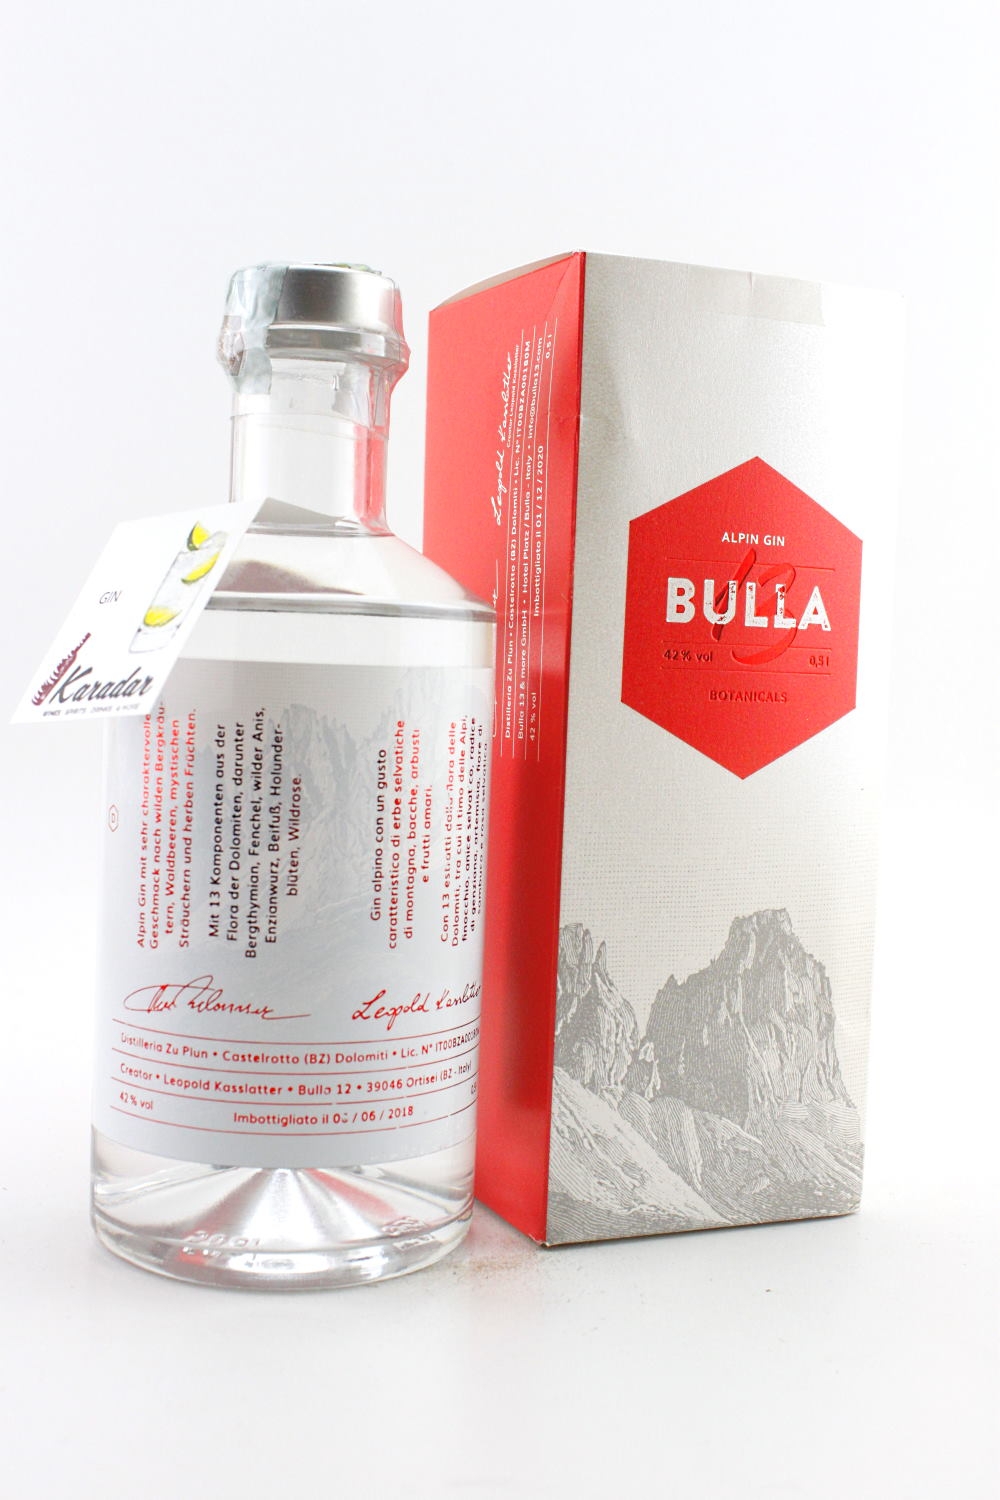 Bulla 13 Alpin Gin 42% vol. Gin